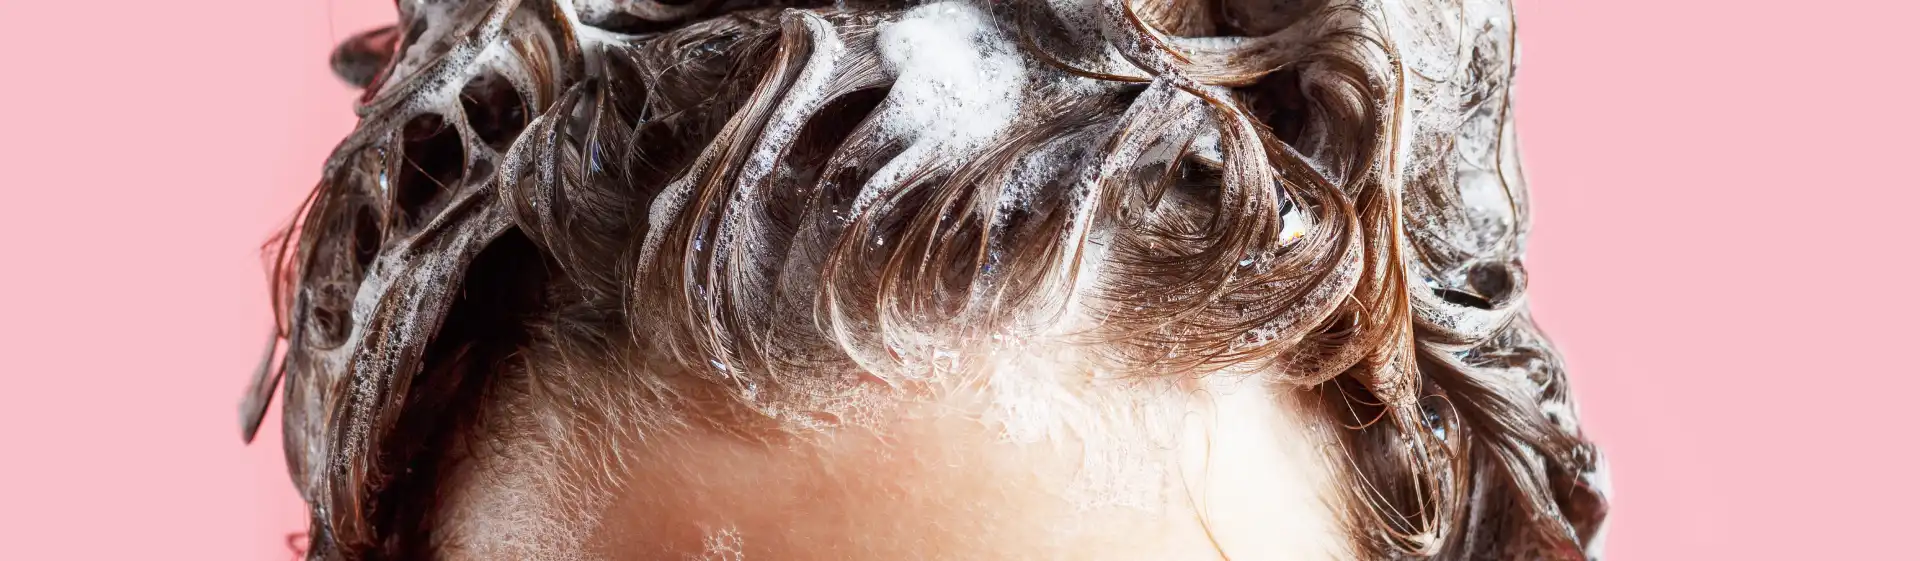 Shampoo sem sulfato: as 6 melhores opções para comprar